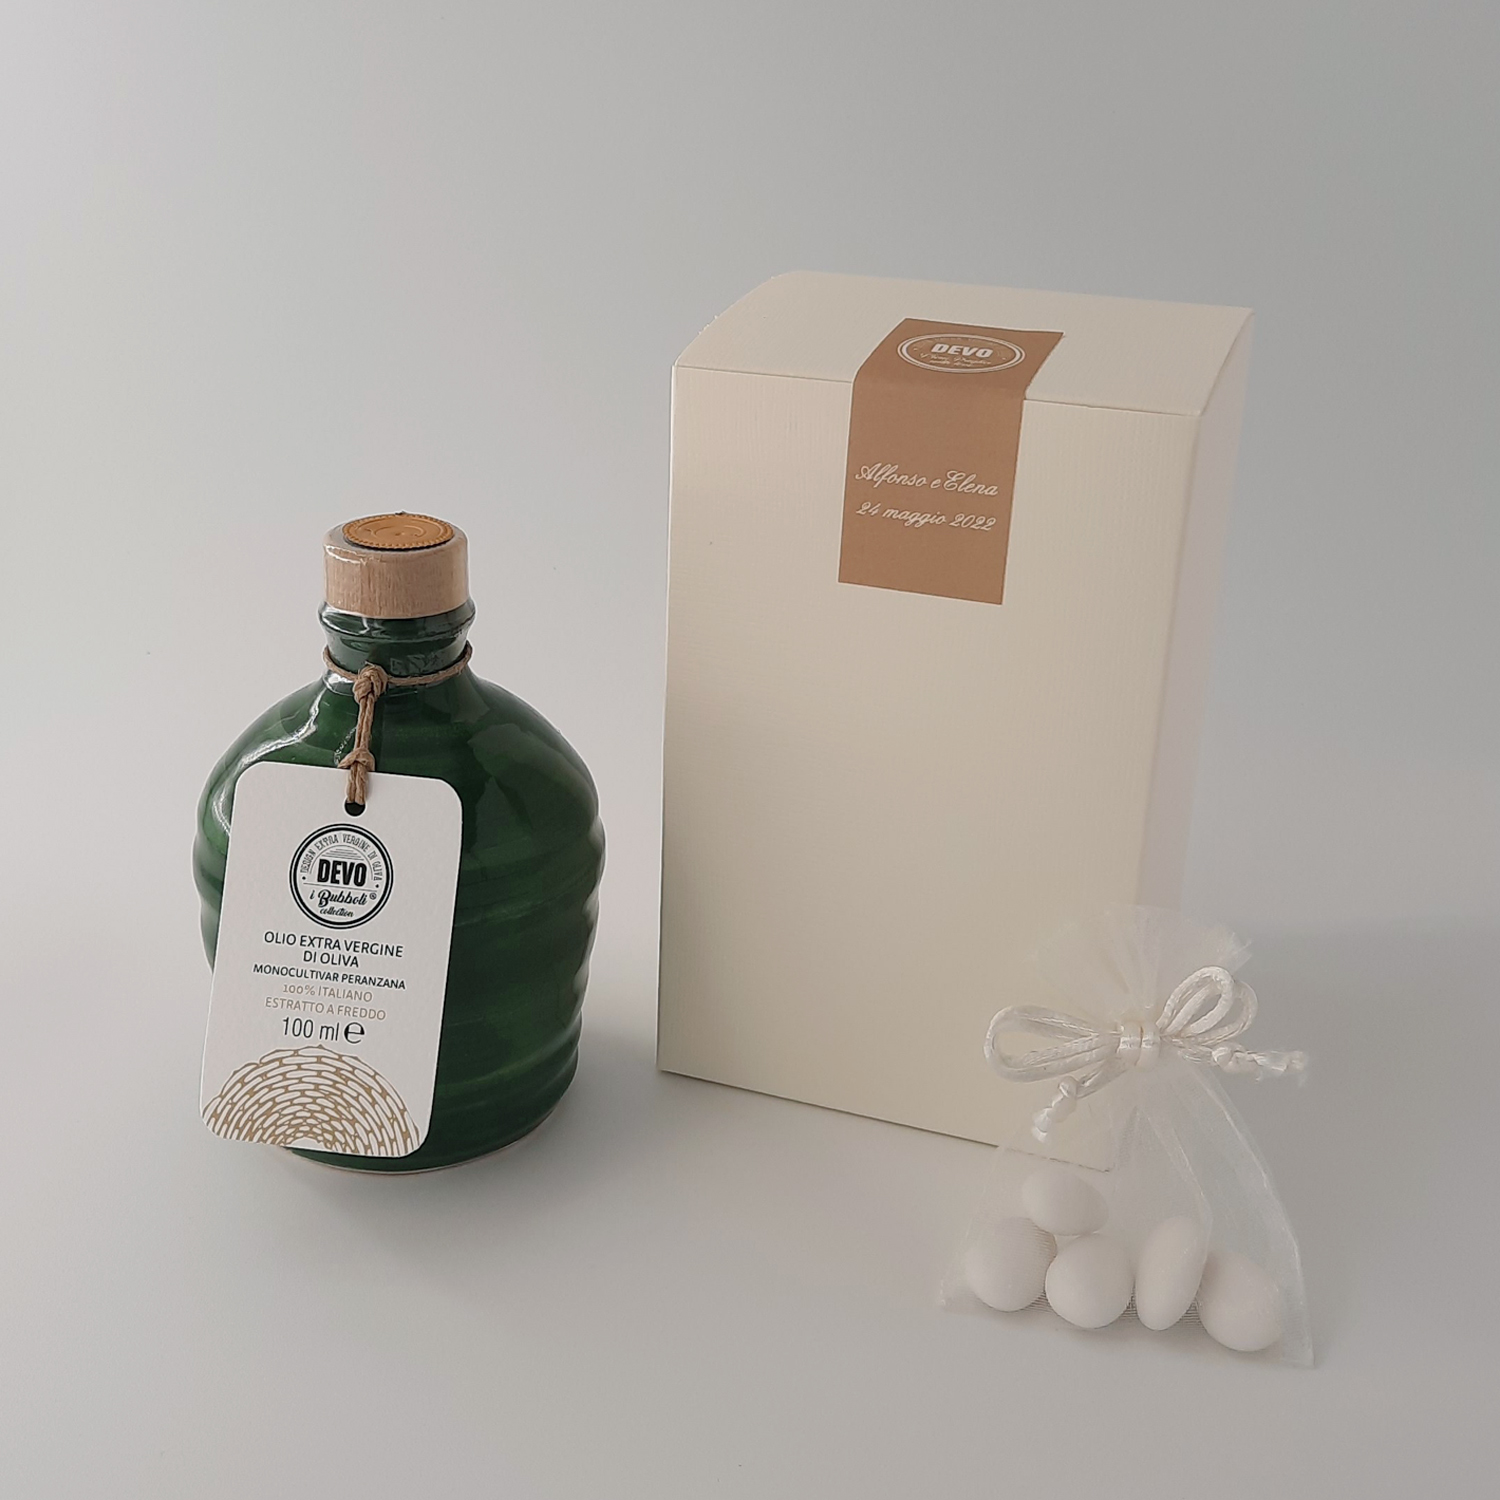 Molto Mini da 100 ml - orcio in ceramica artigianale pugliese con 100 ml di olio extra vergine d'oliva - Wedding box personalizzata